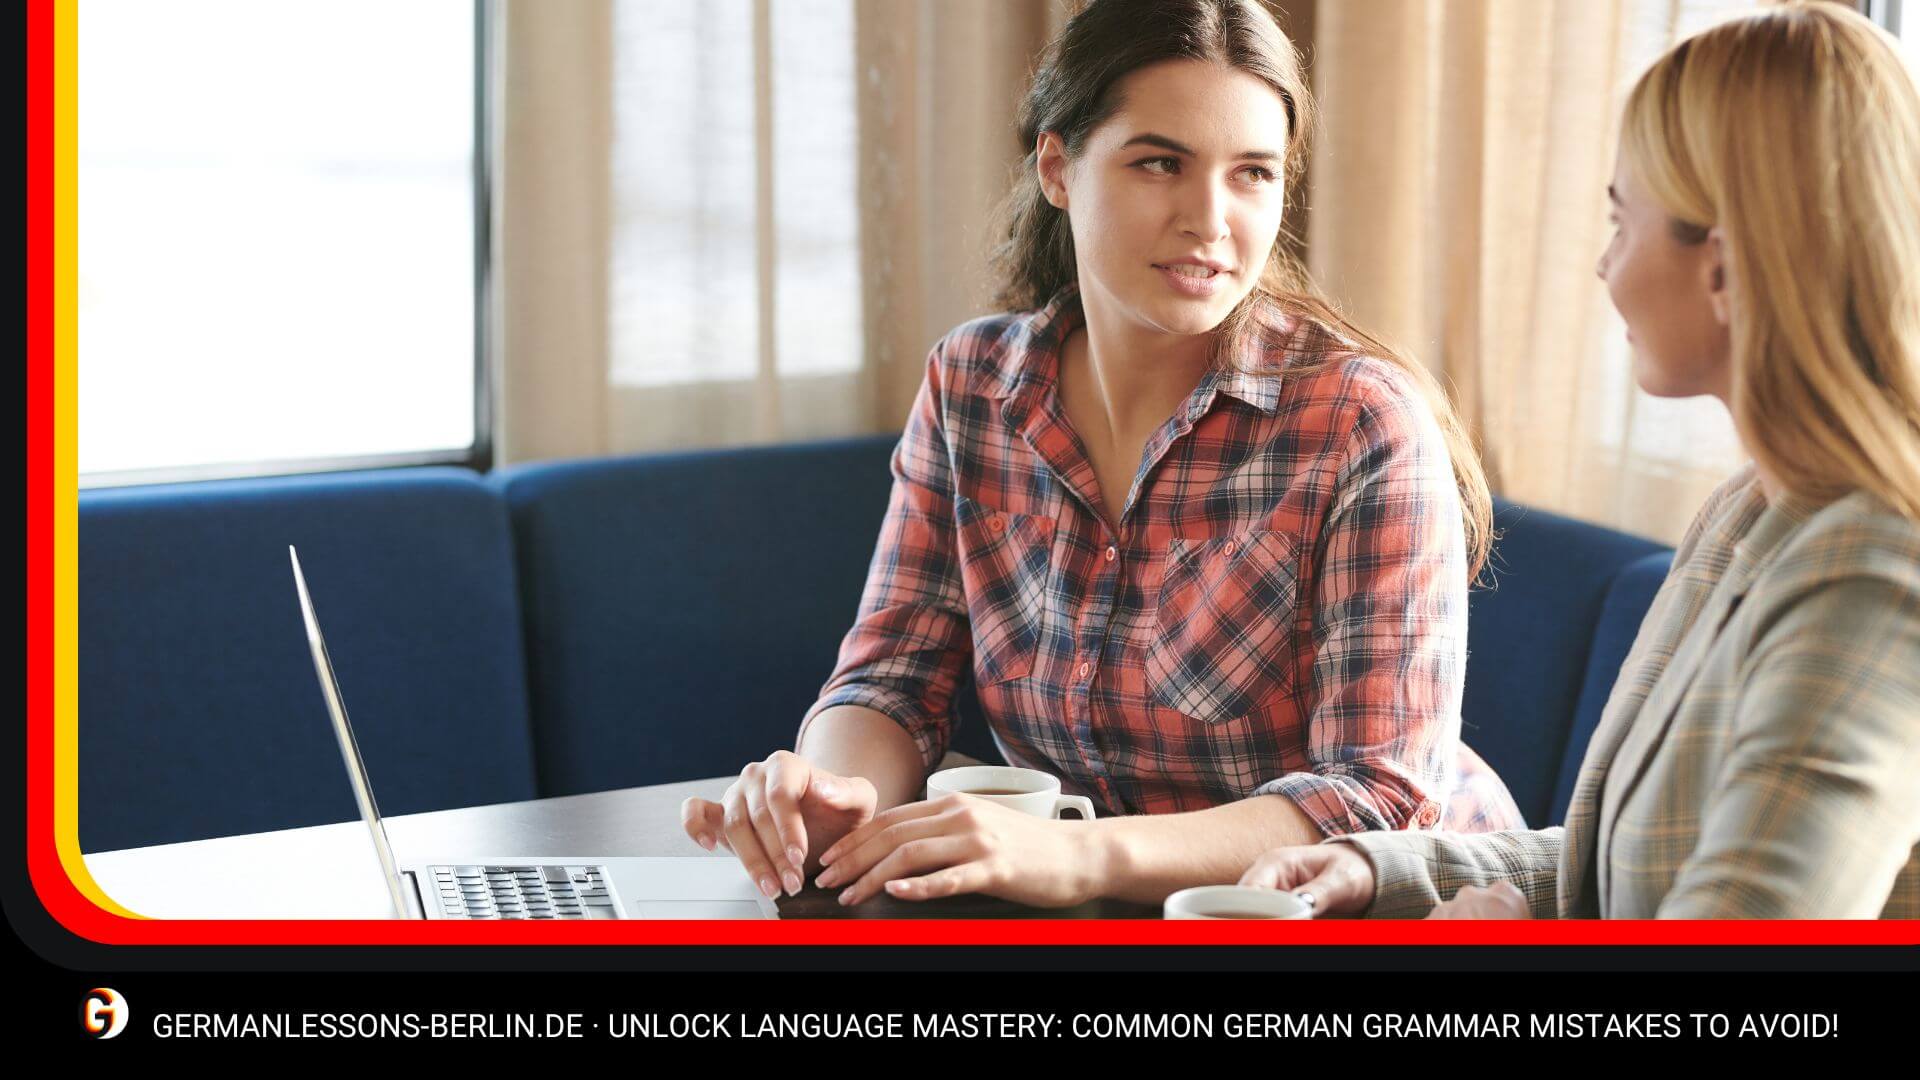 Unlock Language Mastery: Common German Grammar Mistakes to Avoid